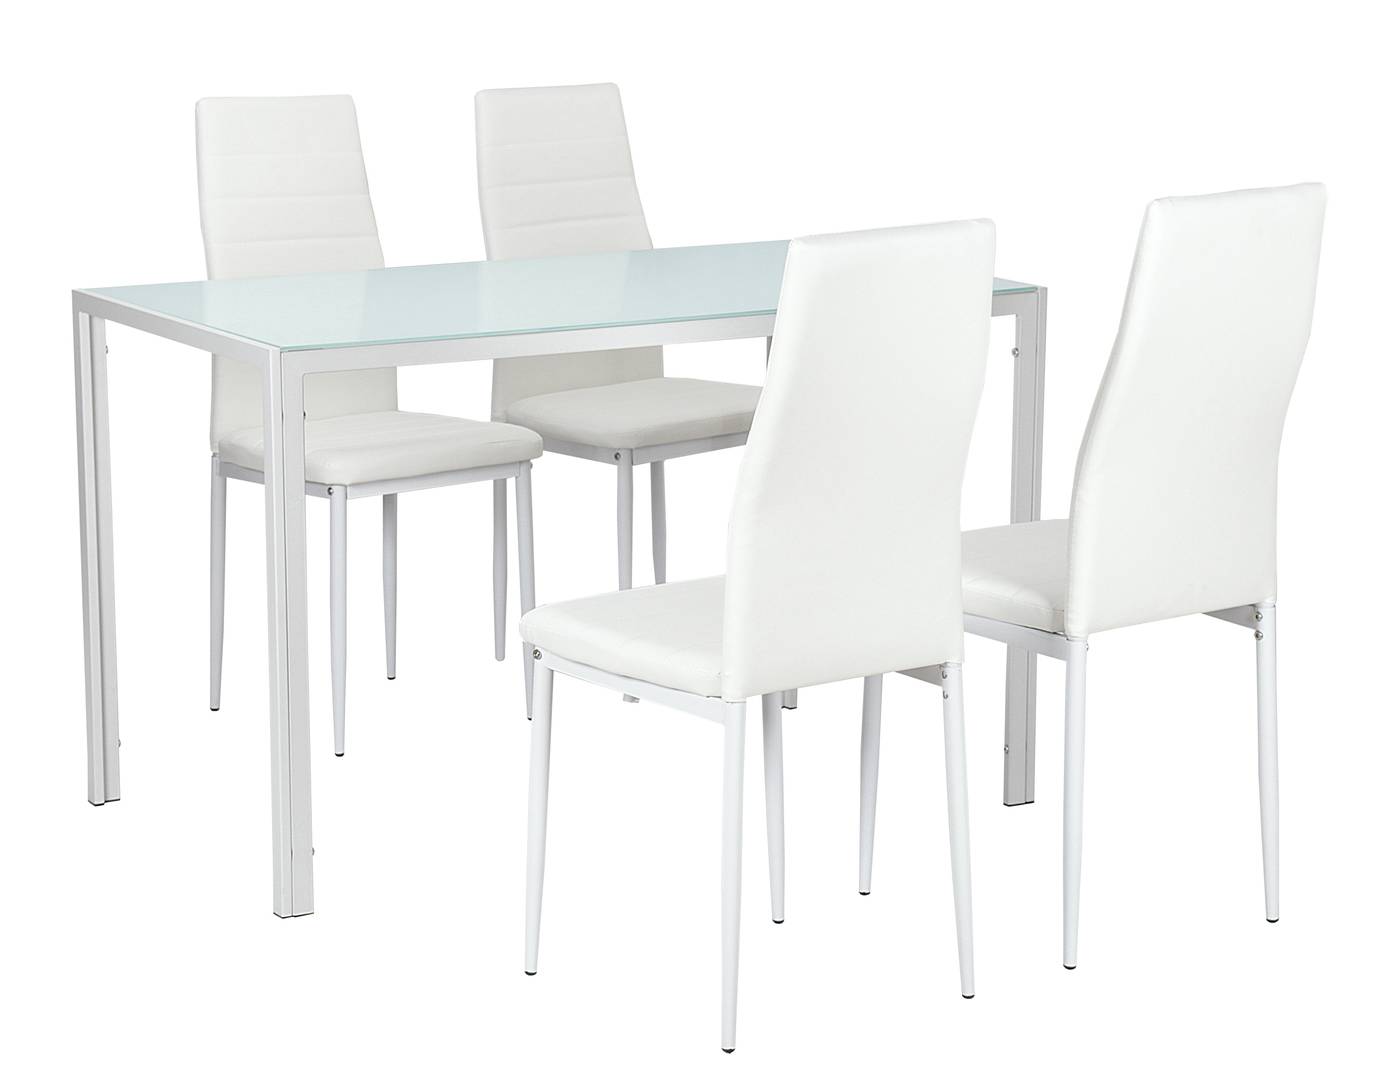 Conjunto de comedor: mesa con tapa de cristal templado + sillas tapizadas en polipiel blanca